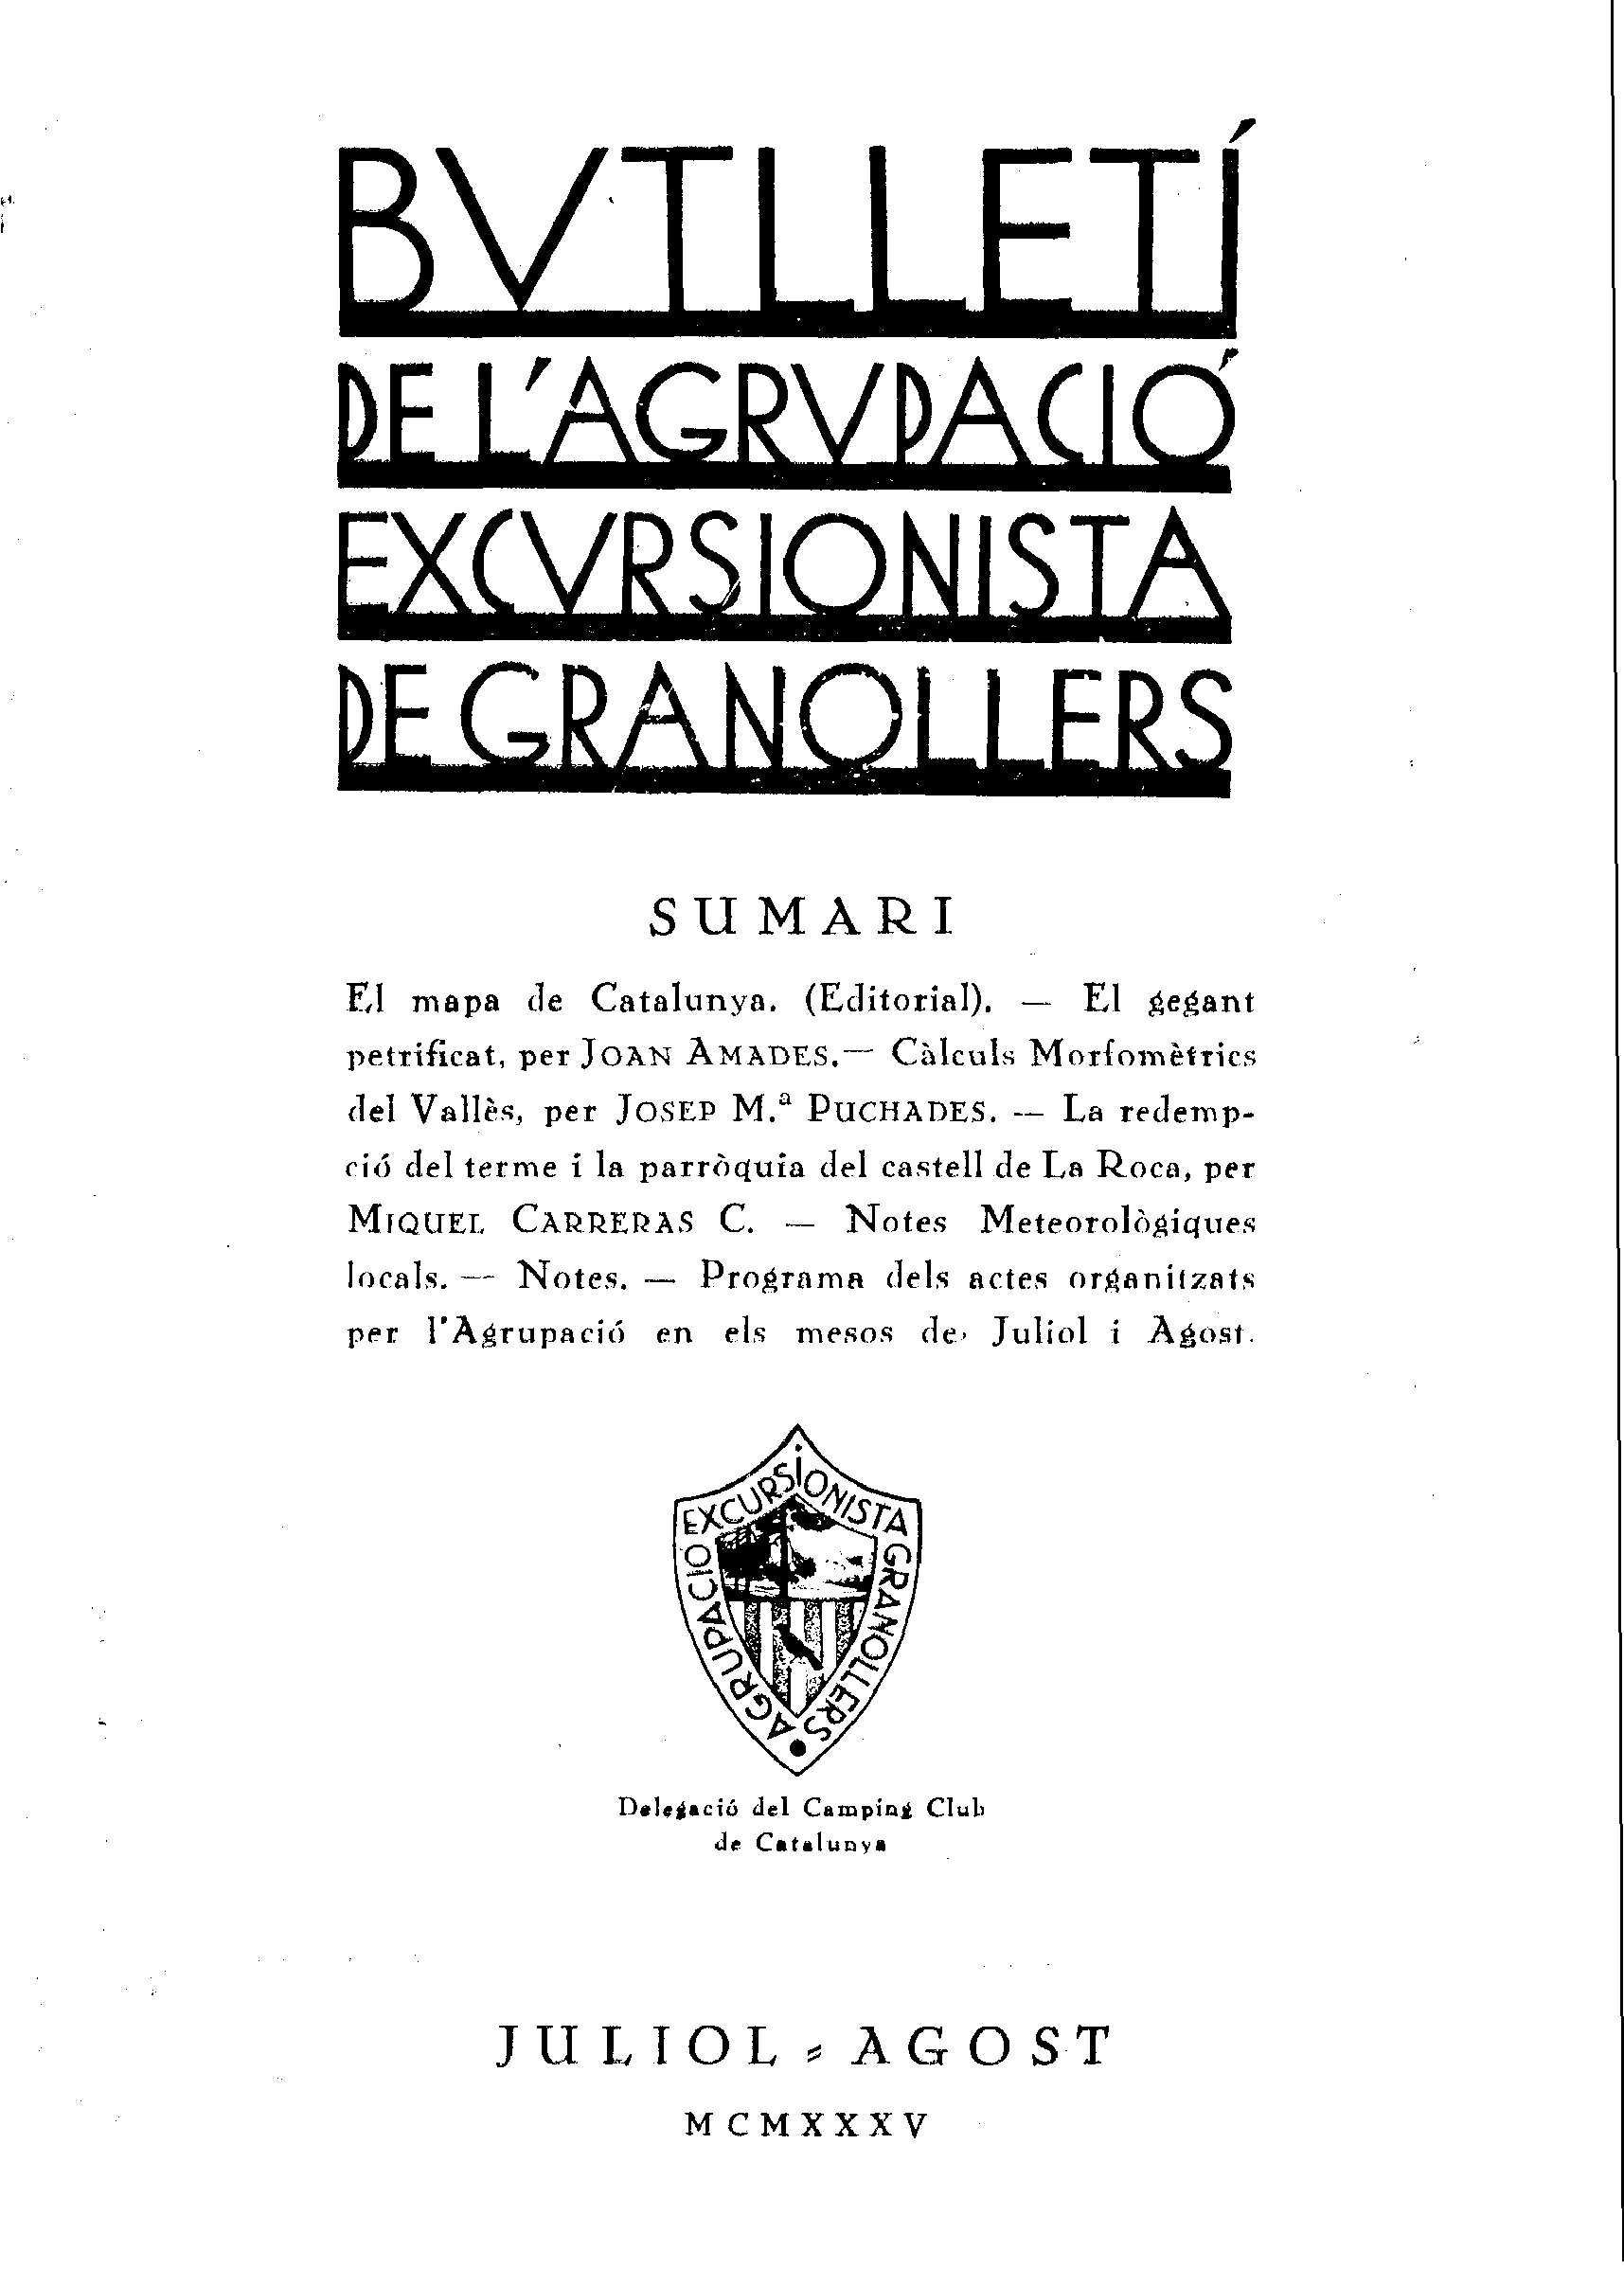 Butlletí de l'Agrupació Excursionista de Granollers, 1/7/1935 [Exemplar]